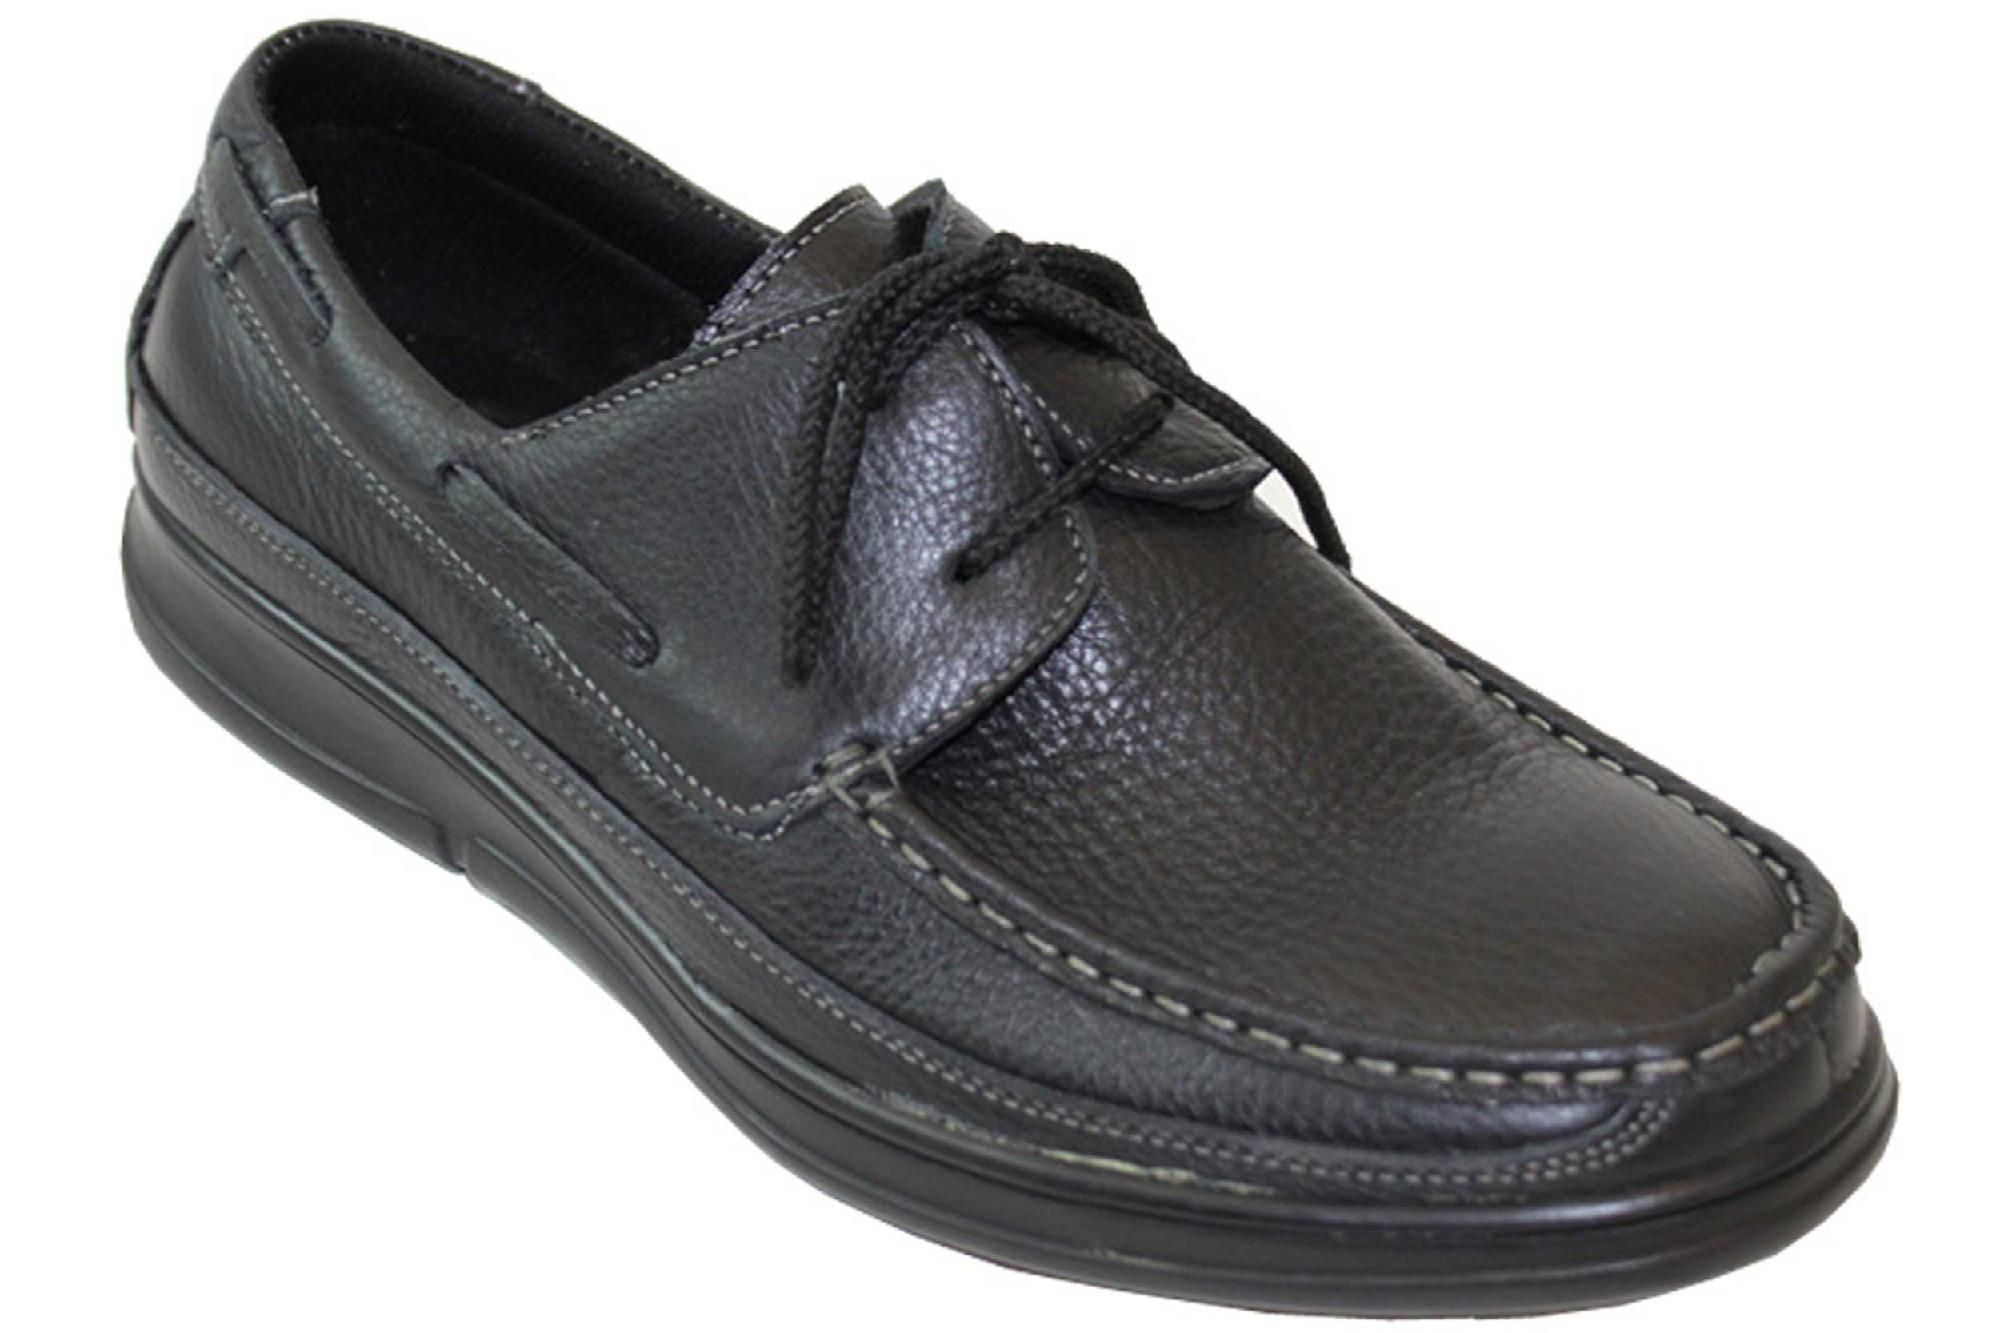 AdTec Men's Laced Comfort Shoe, Black 7.5